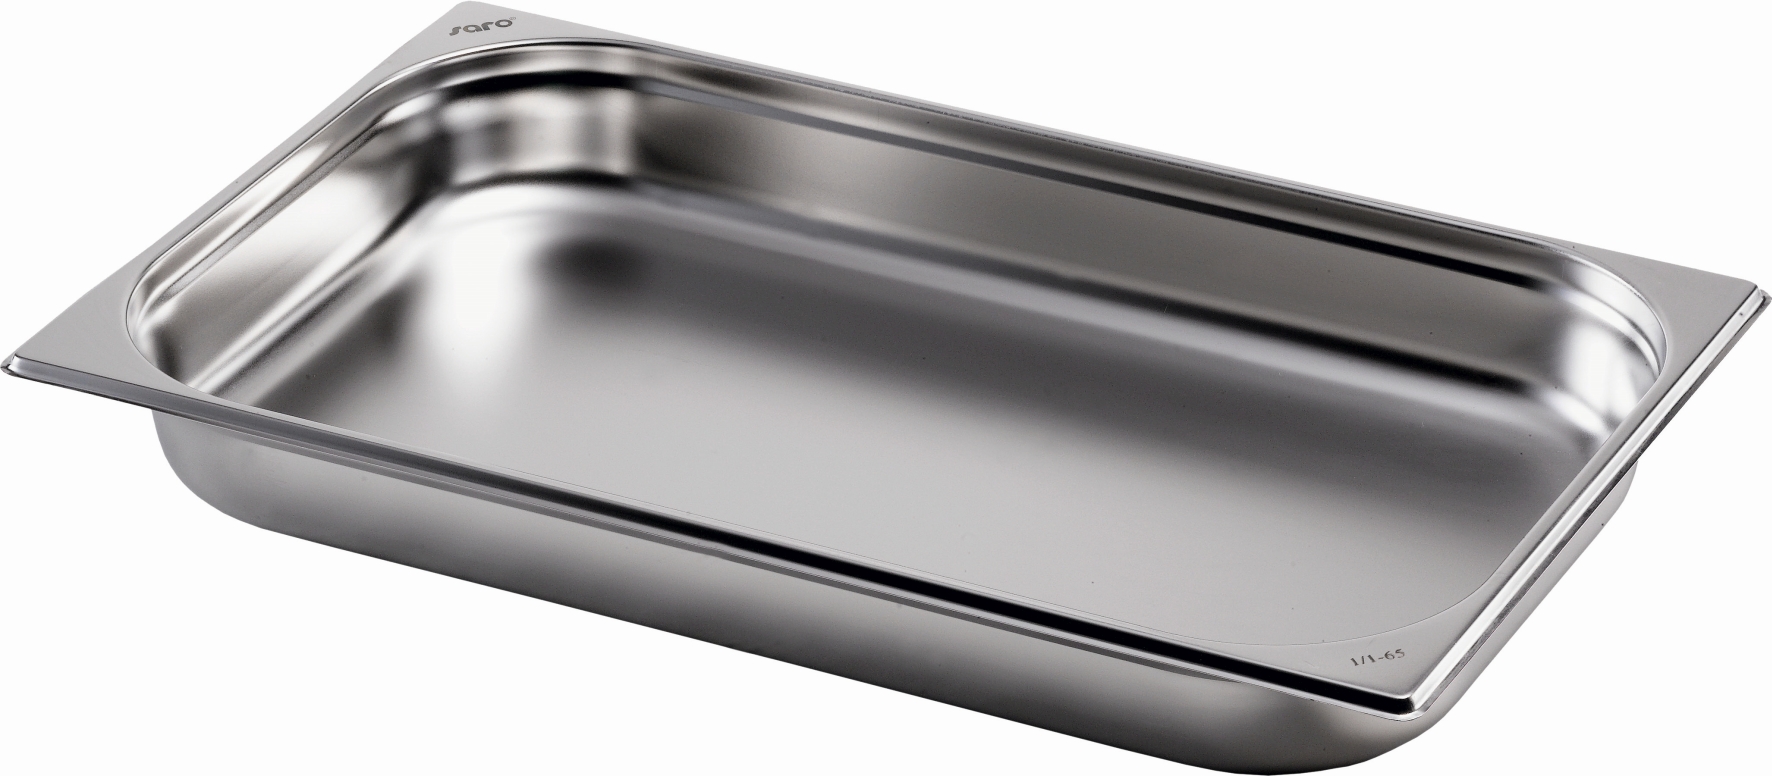 SARO BASIC LINE Gastronormbehälter Edelstahl perforiert 1/1 GN 100 mm tief 